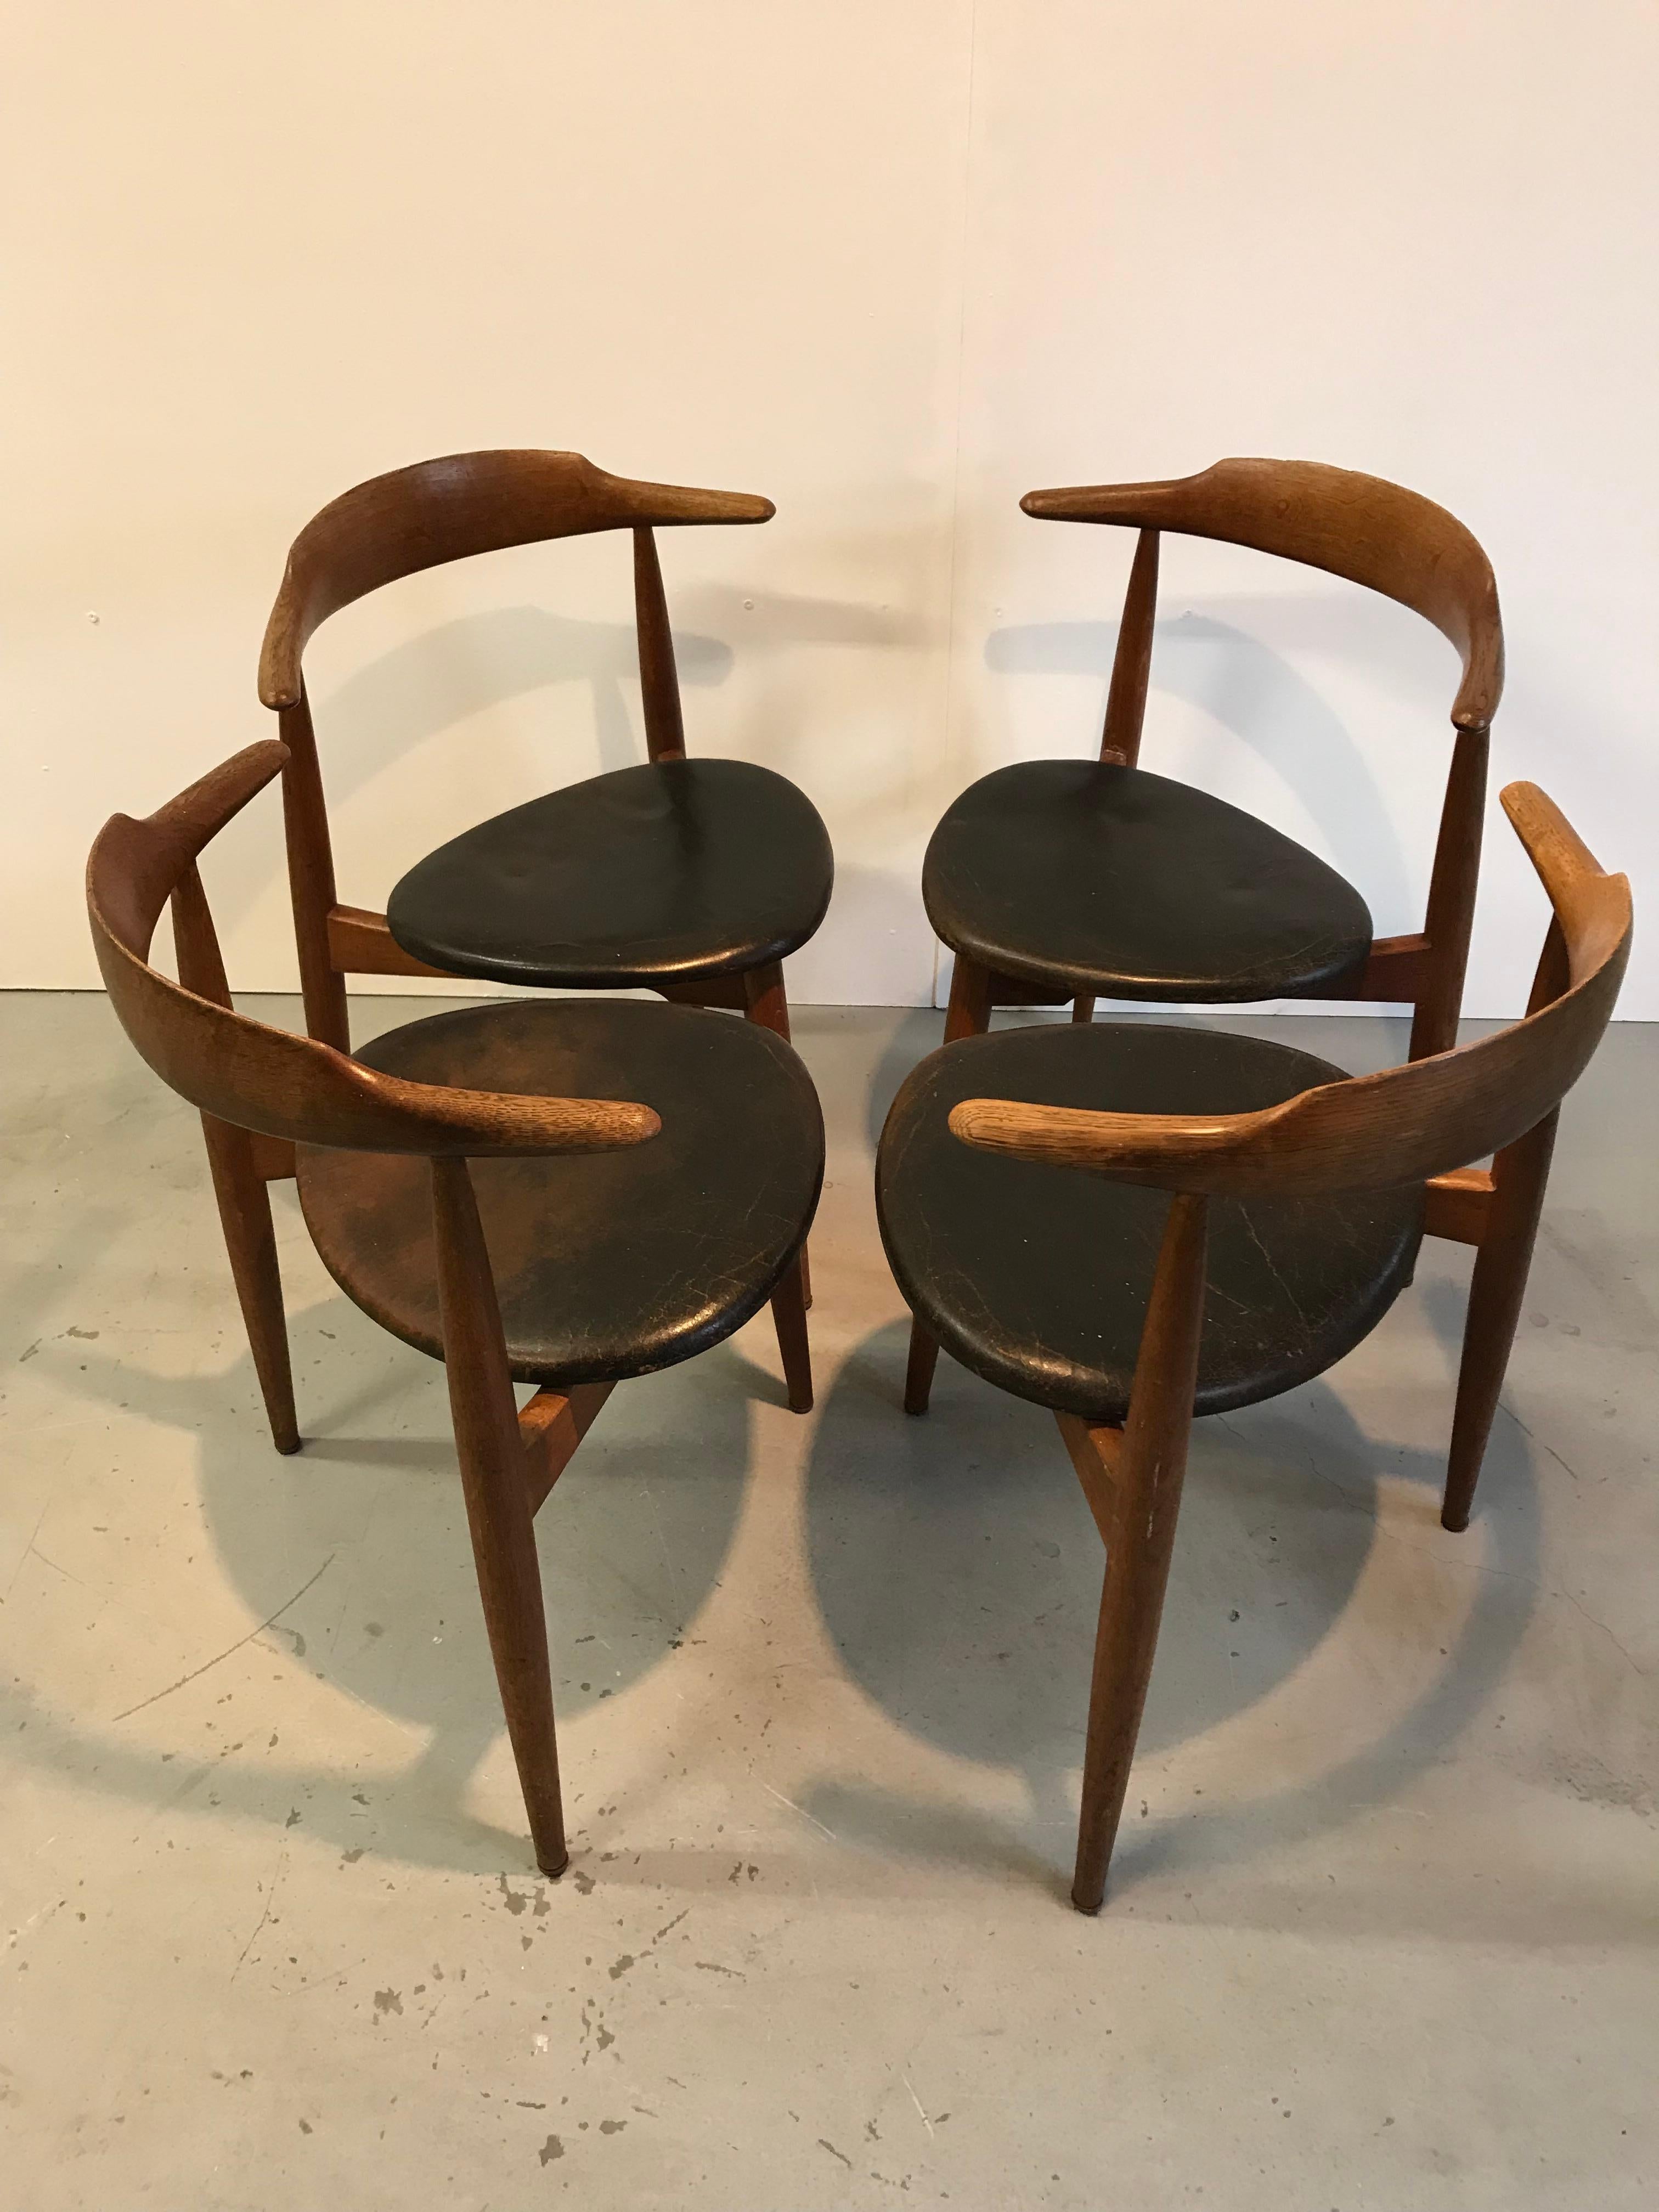 4 chaises de salle à manger Fritz Hansen, conçues par Hans Wegner dans les années 1950. Bois de chêne avec revêtement en cuir noir.
Très bon état vintage.